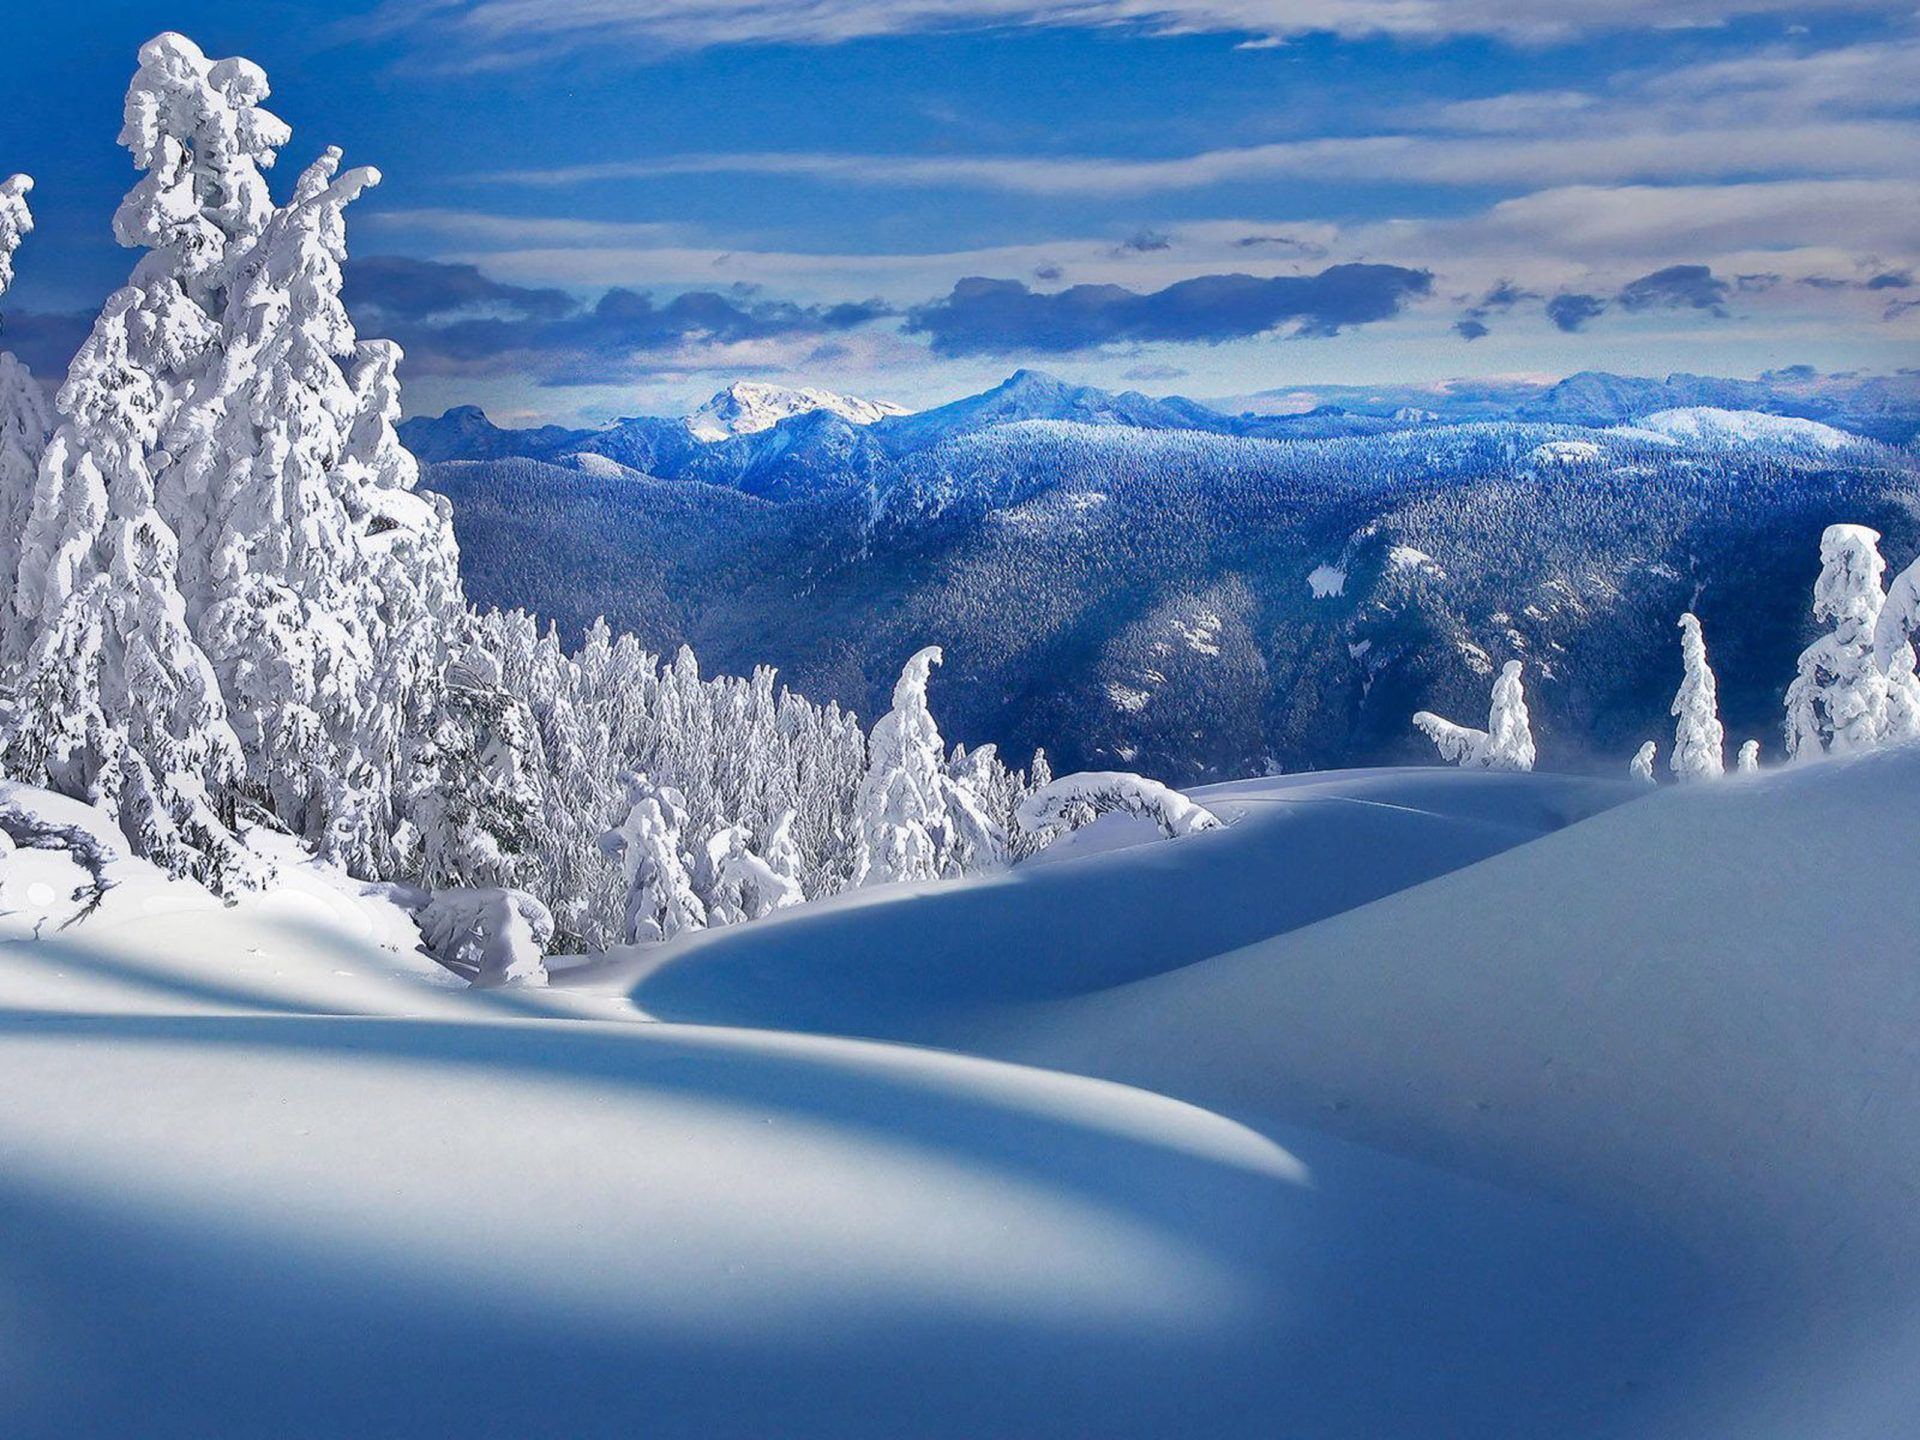 Bavarian Alps Mountain Range In Germany Beautiful Winter Landscape HD Wallpaper For Tablets Free Download Best HD Desktop Wallpaper 3840x2400, Wallpaper13.com